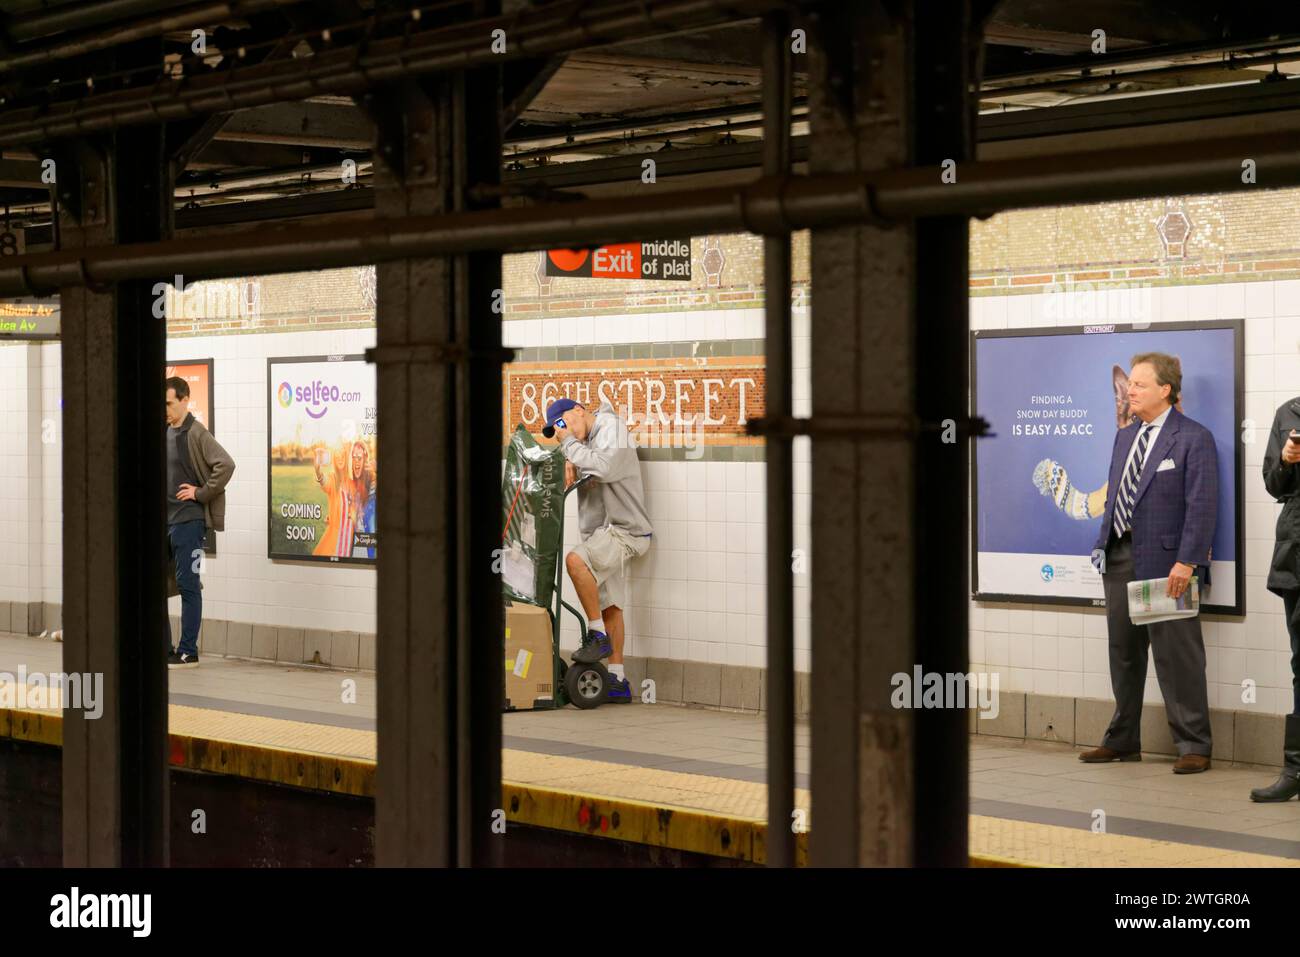 Leute, die auf dem Bahnsteig einer U-Bahnstation neben Werbeplakaten warten, Manhattan, New York City, New York, USA, Nordamerika Stockfoto